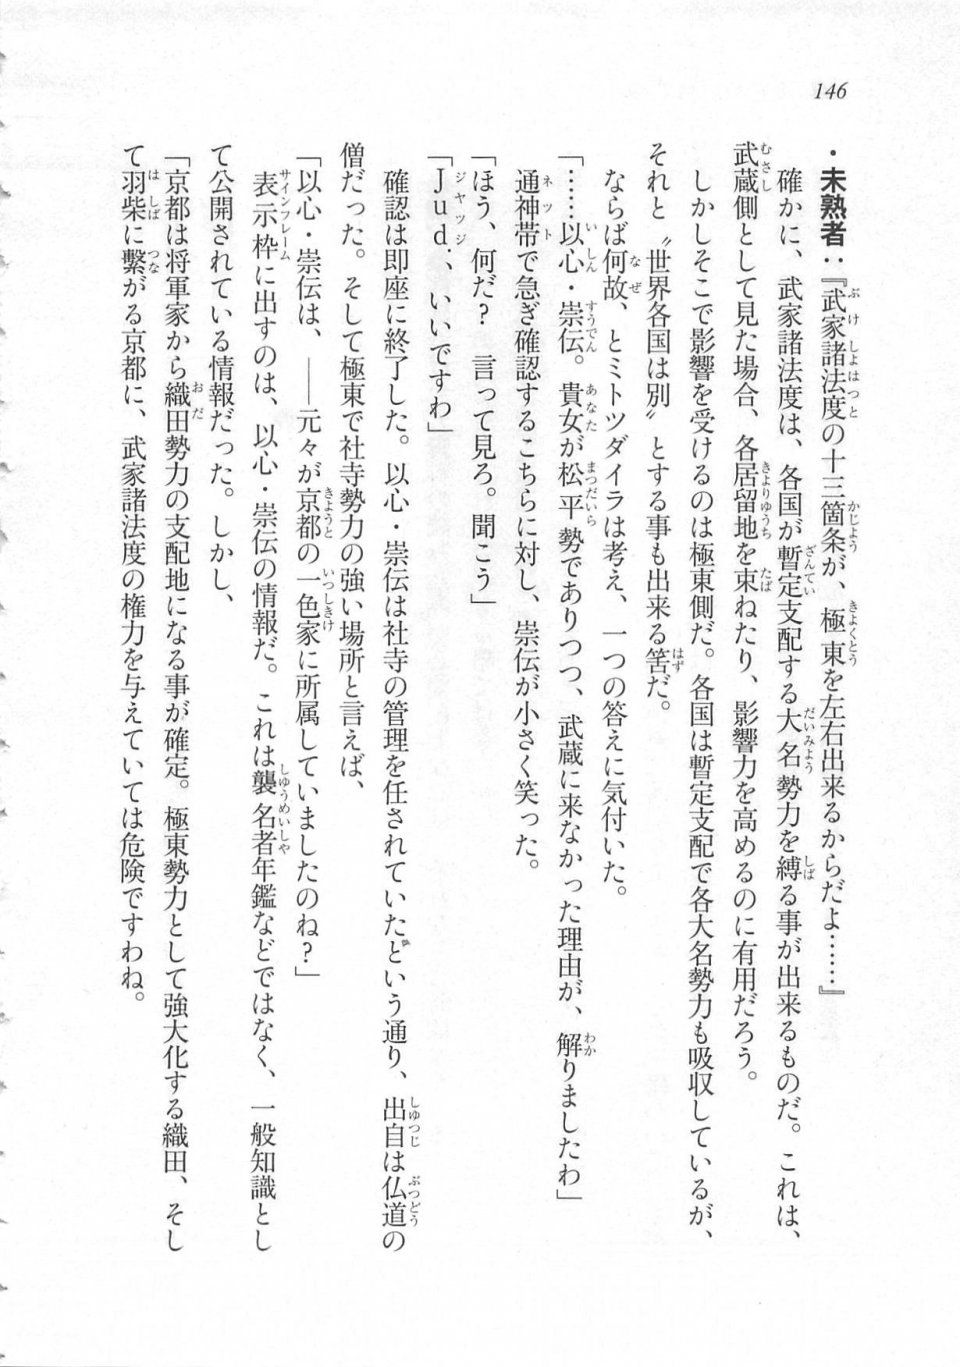 Kyoukai Senjou no Horizon LN Sidestory Vol 3 - Photo #150